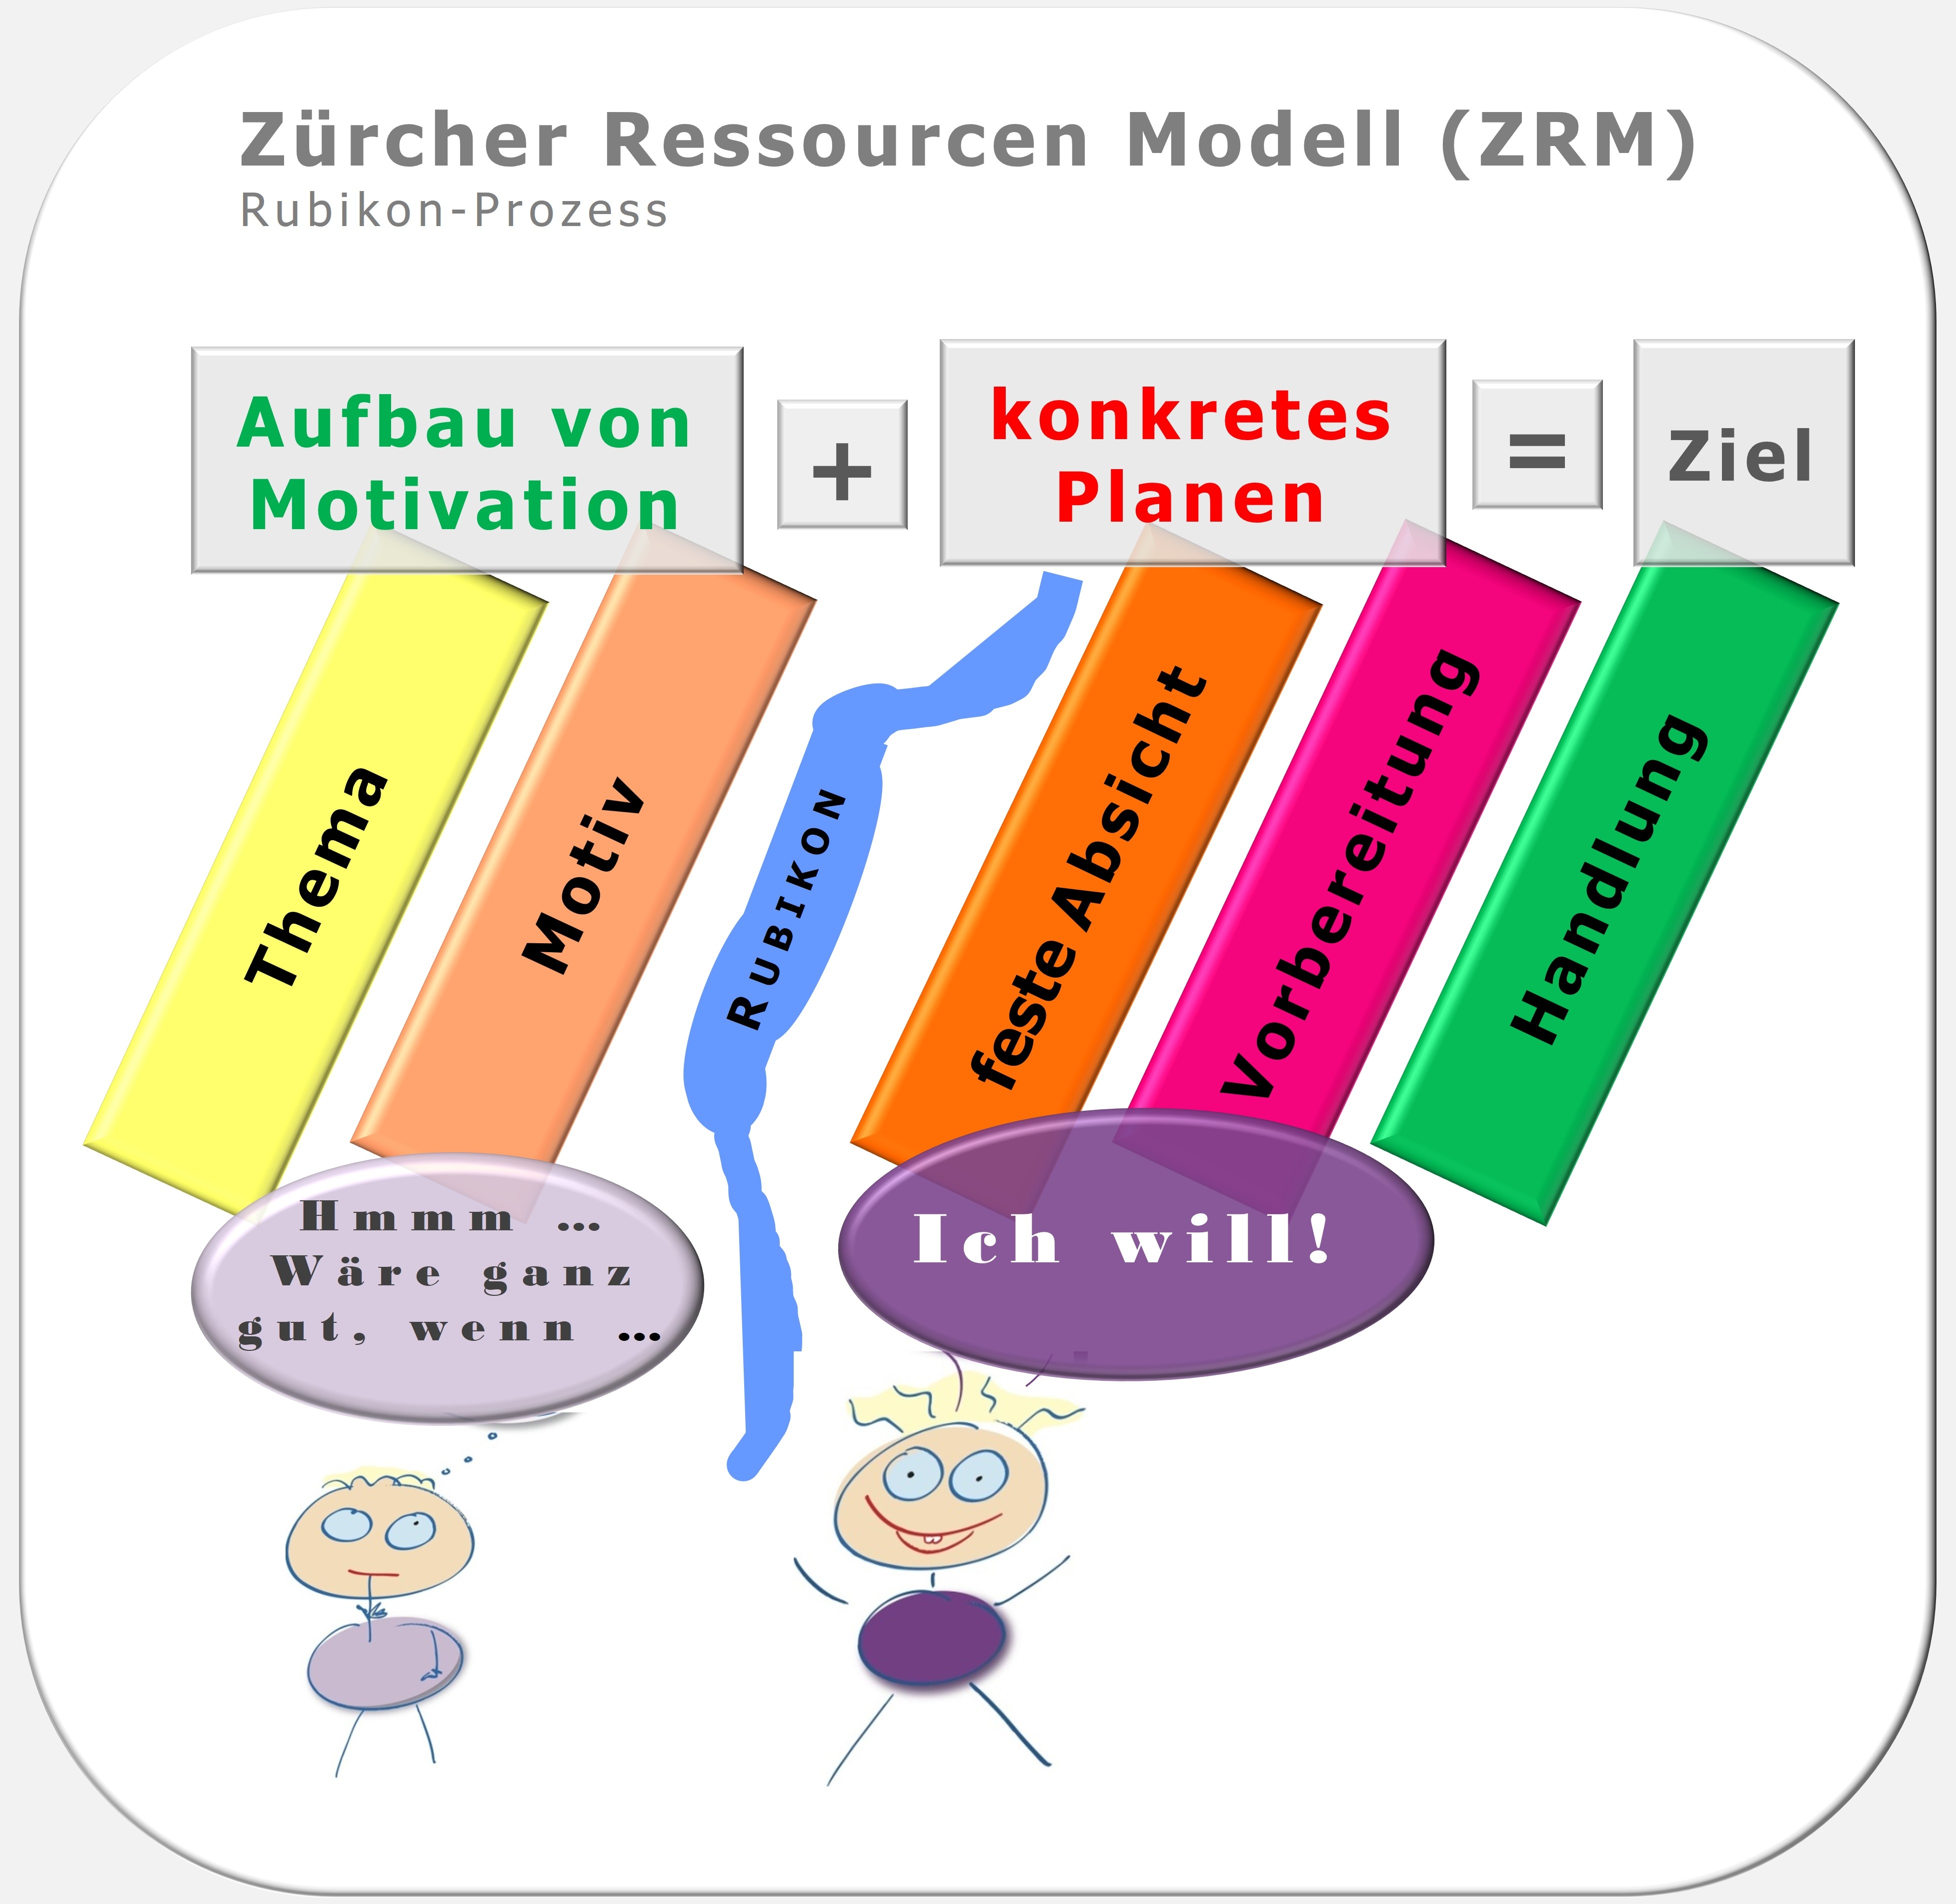 Zürcher Ressourcen Modell